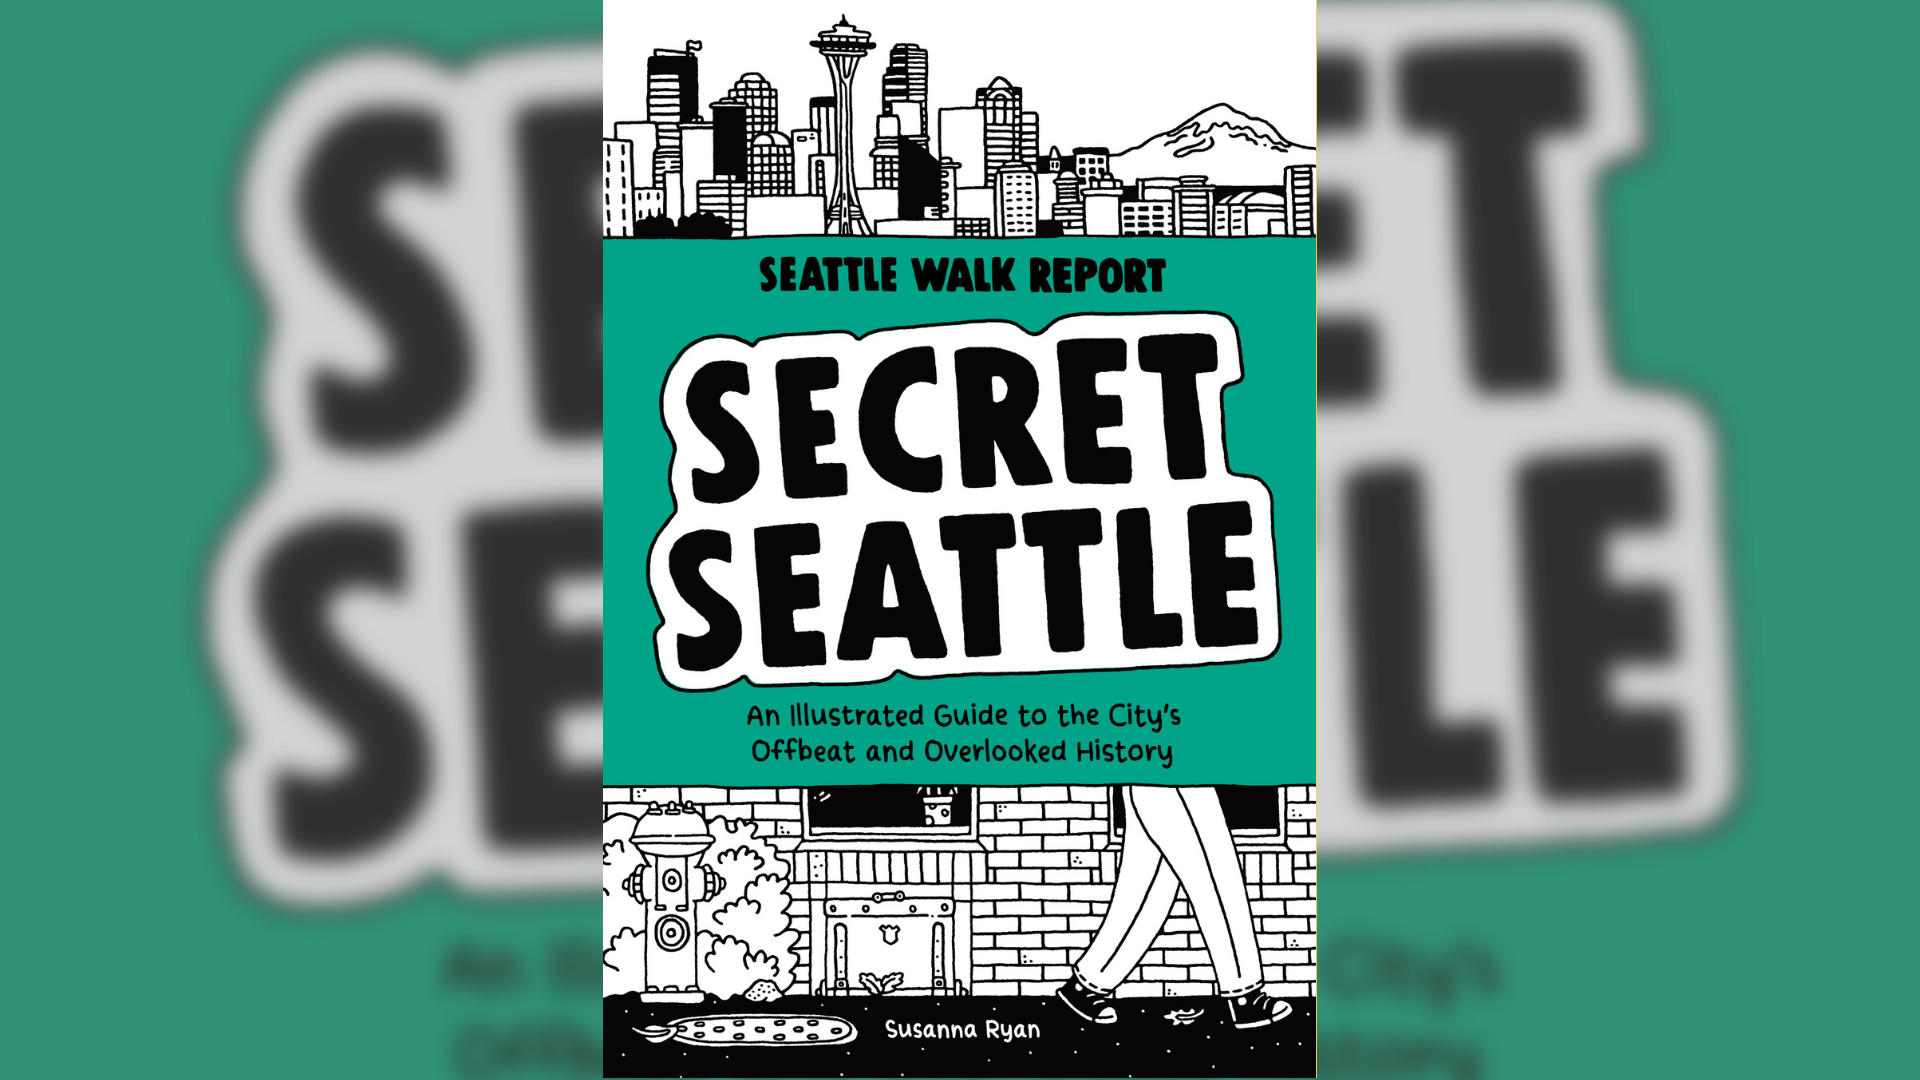 "Secret Seattle" is Ryan's second book following "Seattle Walk Report." #newdaynw